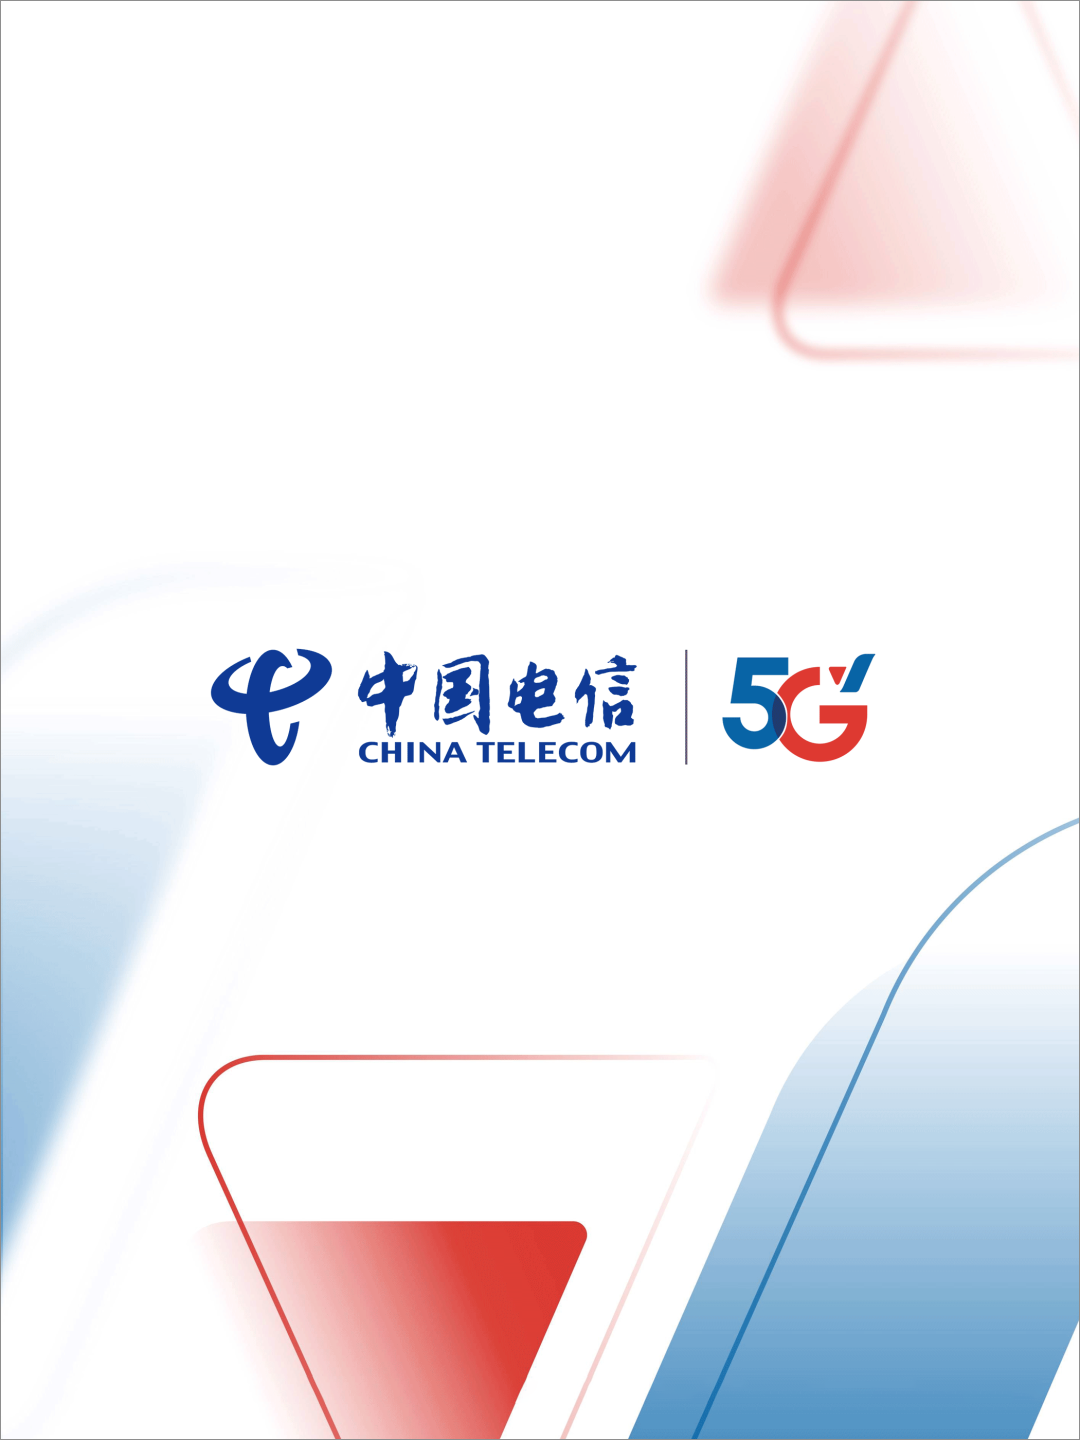 中国电信5G启用全新LOGO设计